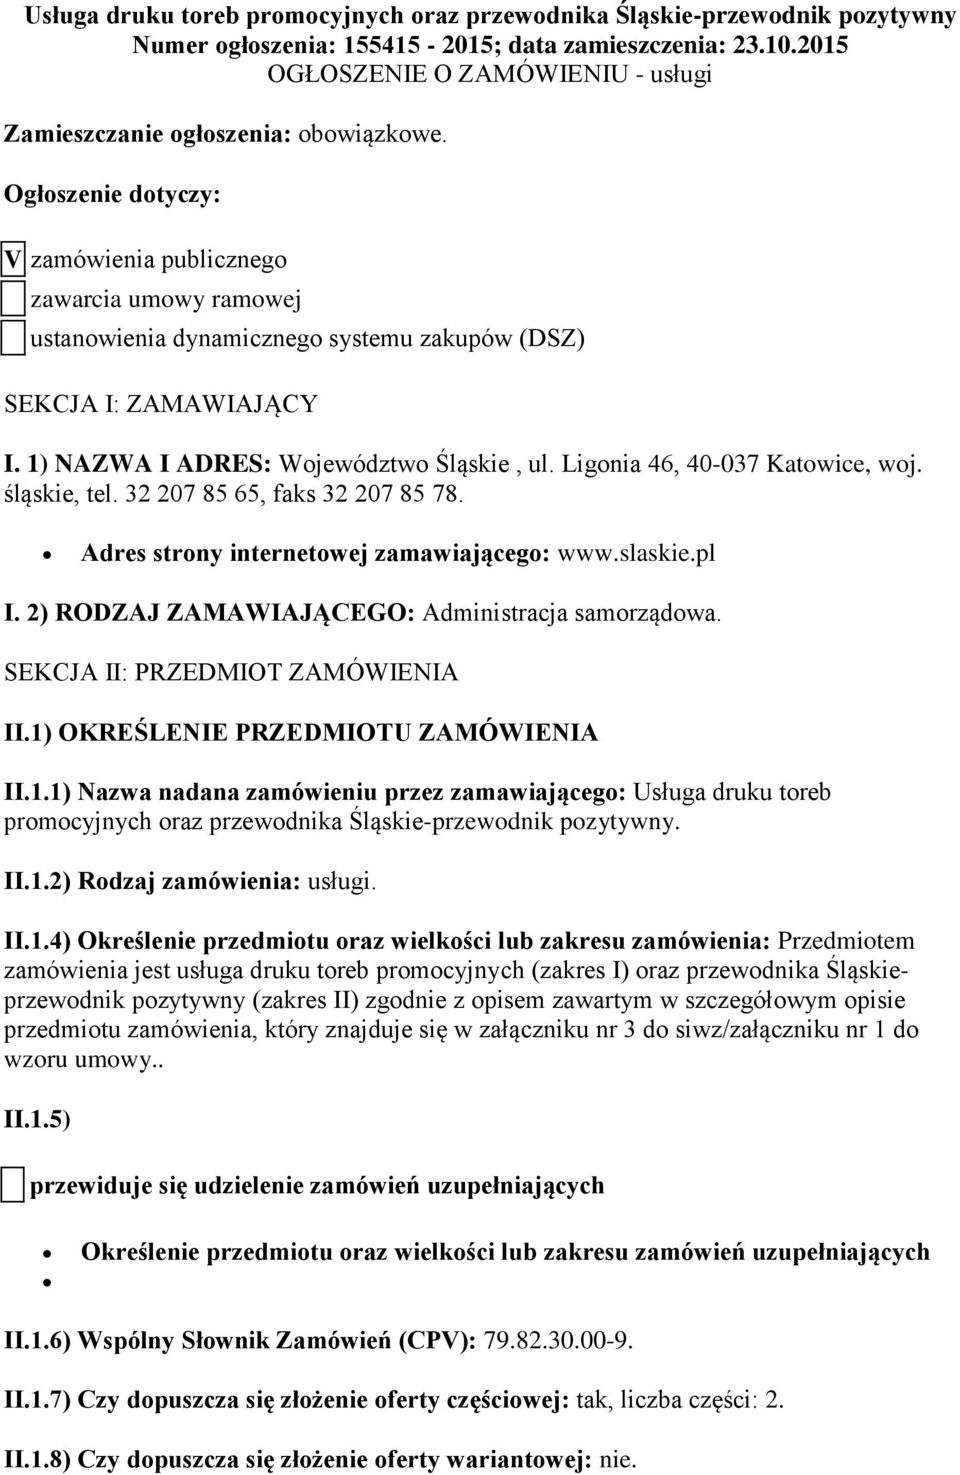 Ogłoszenie dotyczy: V zamówienia publicznego zawarcia umowy ramowej ustanowienia dynamicznego systemu zakupów (DSZ) SEKCJA I: ZAMAWIAJĄCY I. 1) NAZWA I ADRES: Województwo Śląskie, ul.